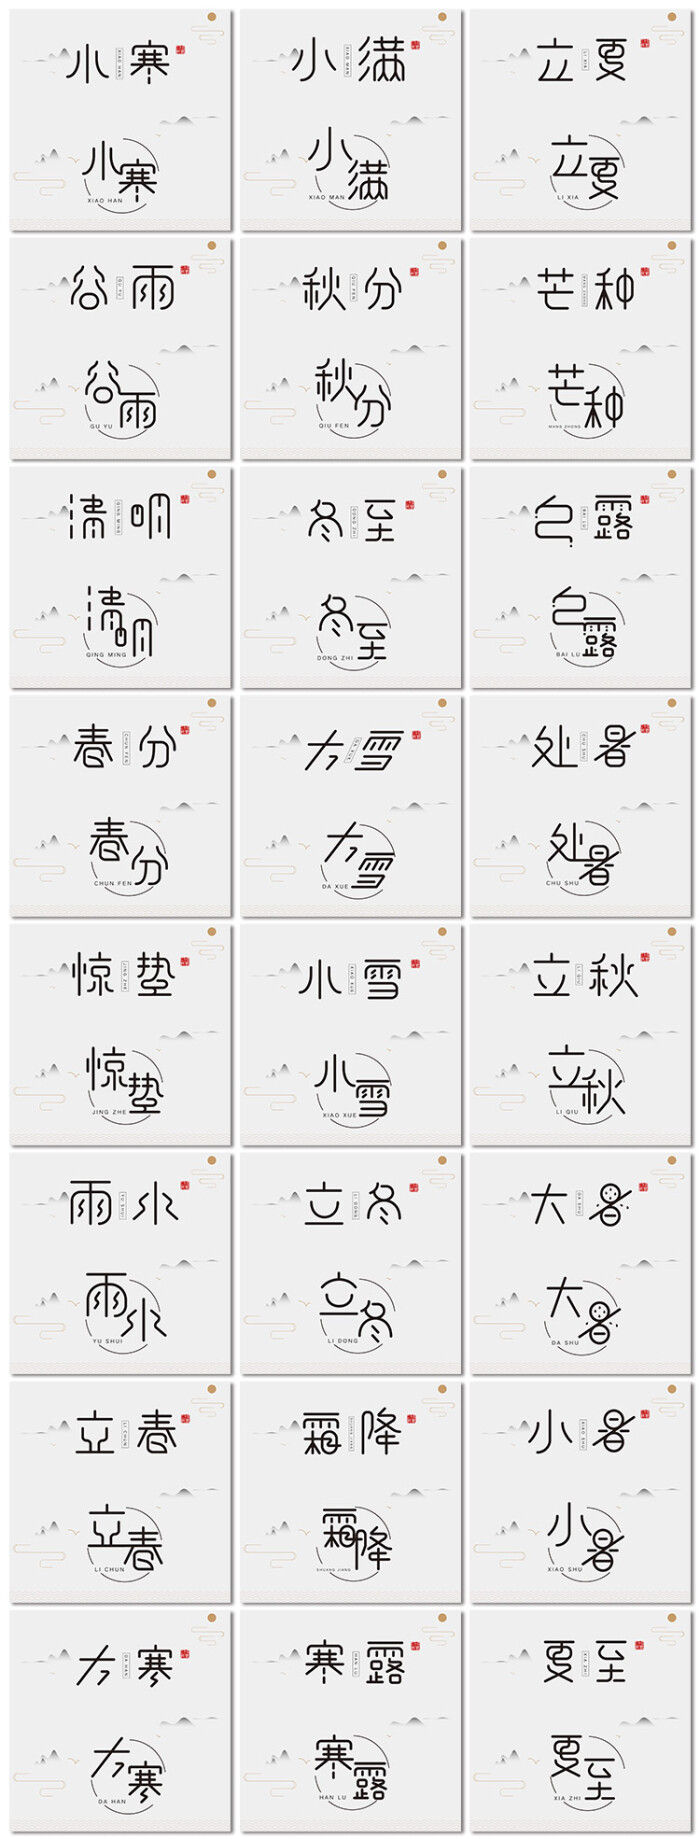 二十四节气创意中国风传统节日字体设计海报矢量素材模板精品设计